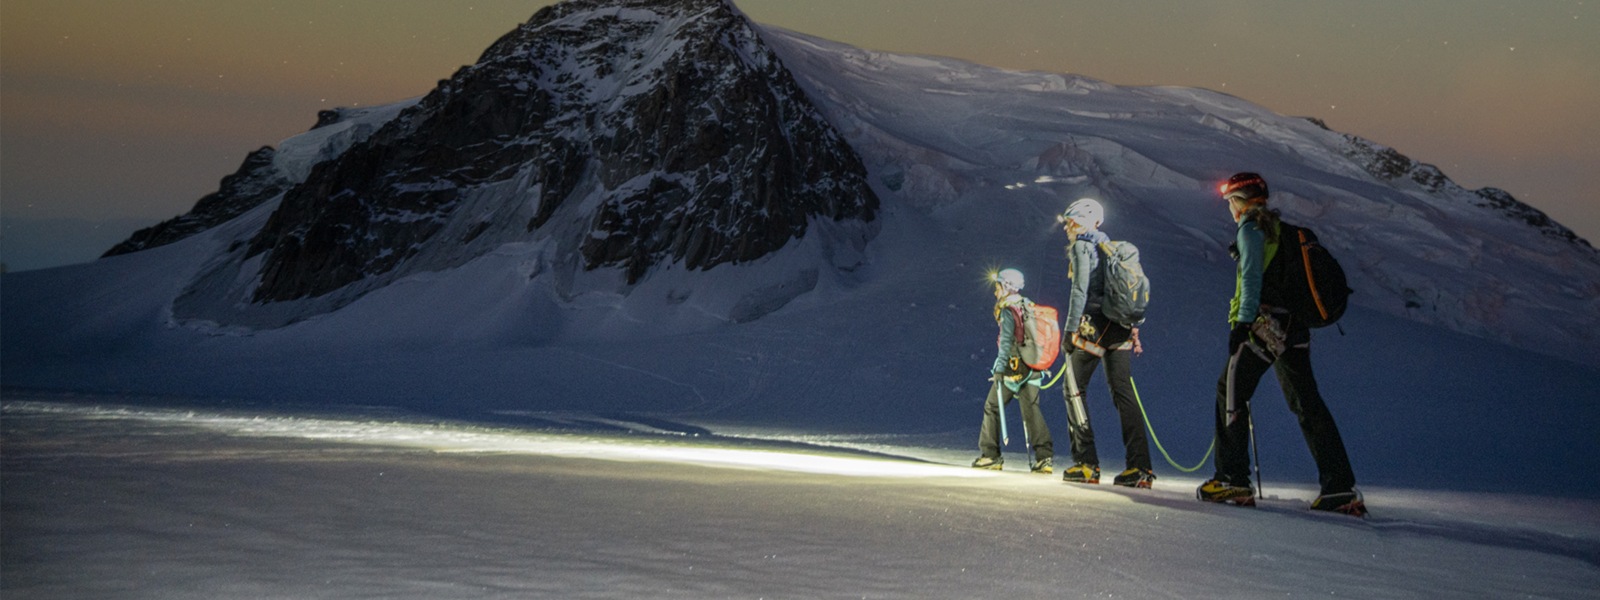 Трима туристи, които пресичат снежна планина под звездното небе